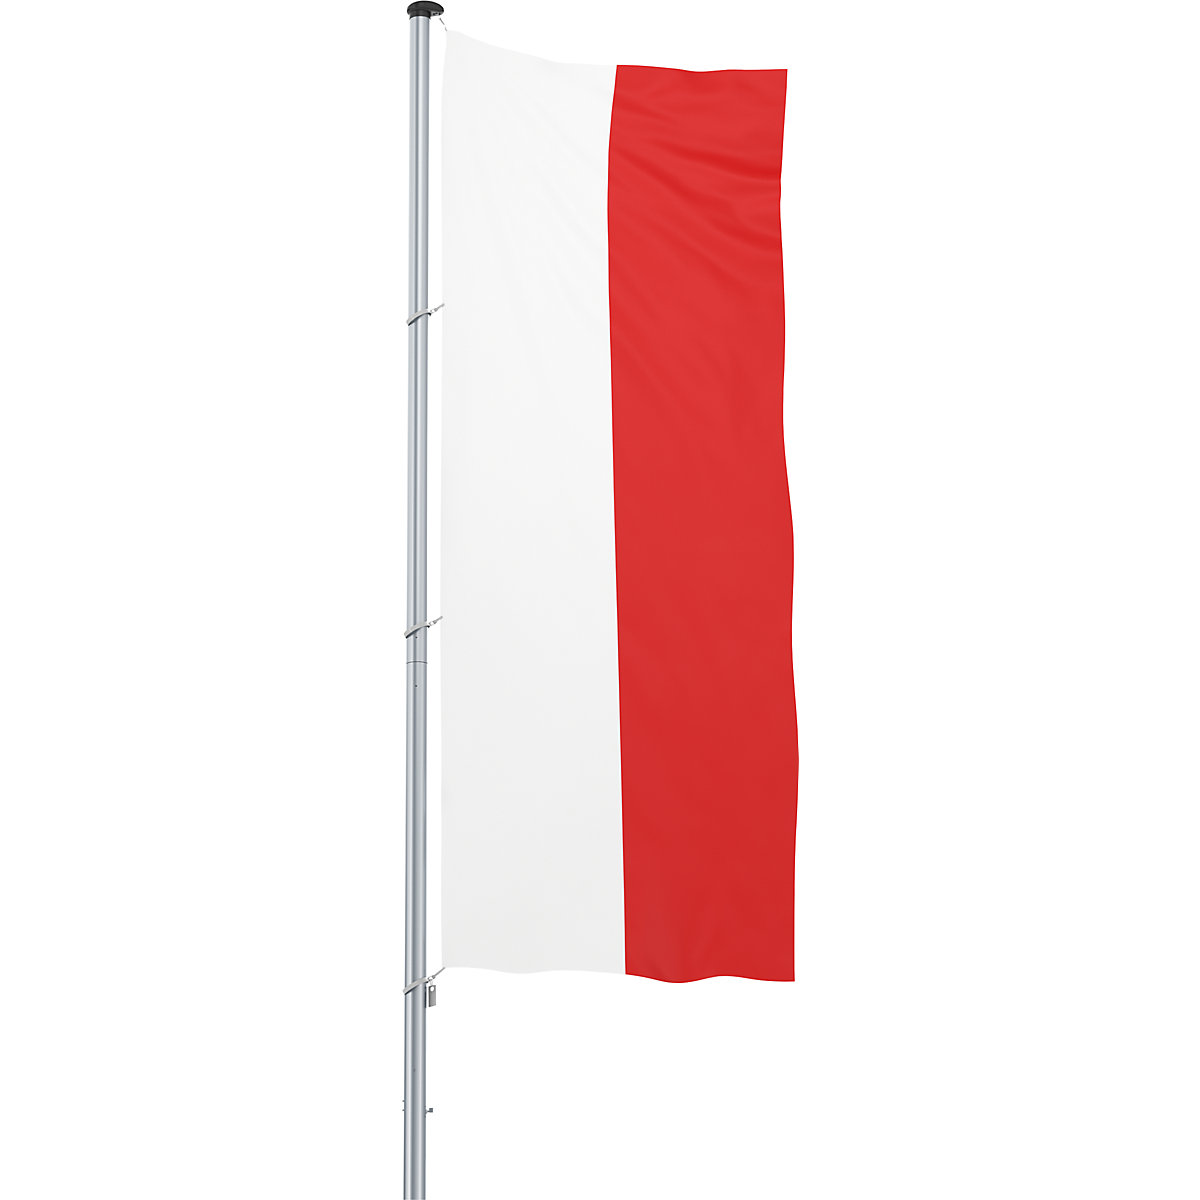 Hijsvlag/landvlag – Mannus, formaat 1,2 x 3 m, Polen-20